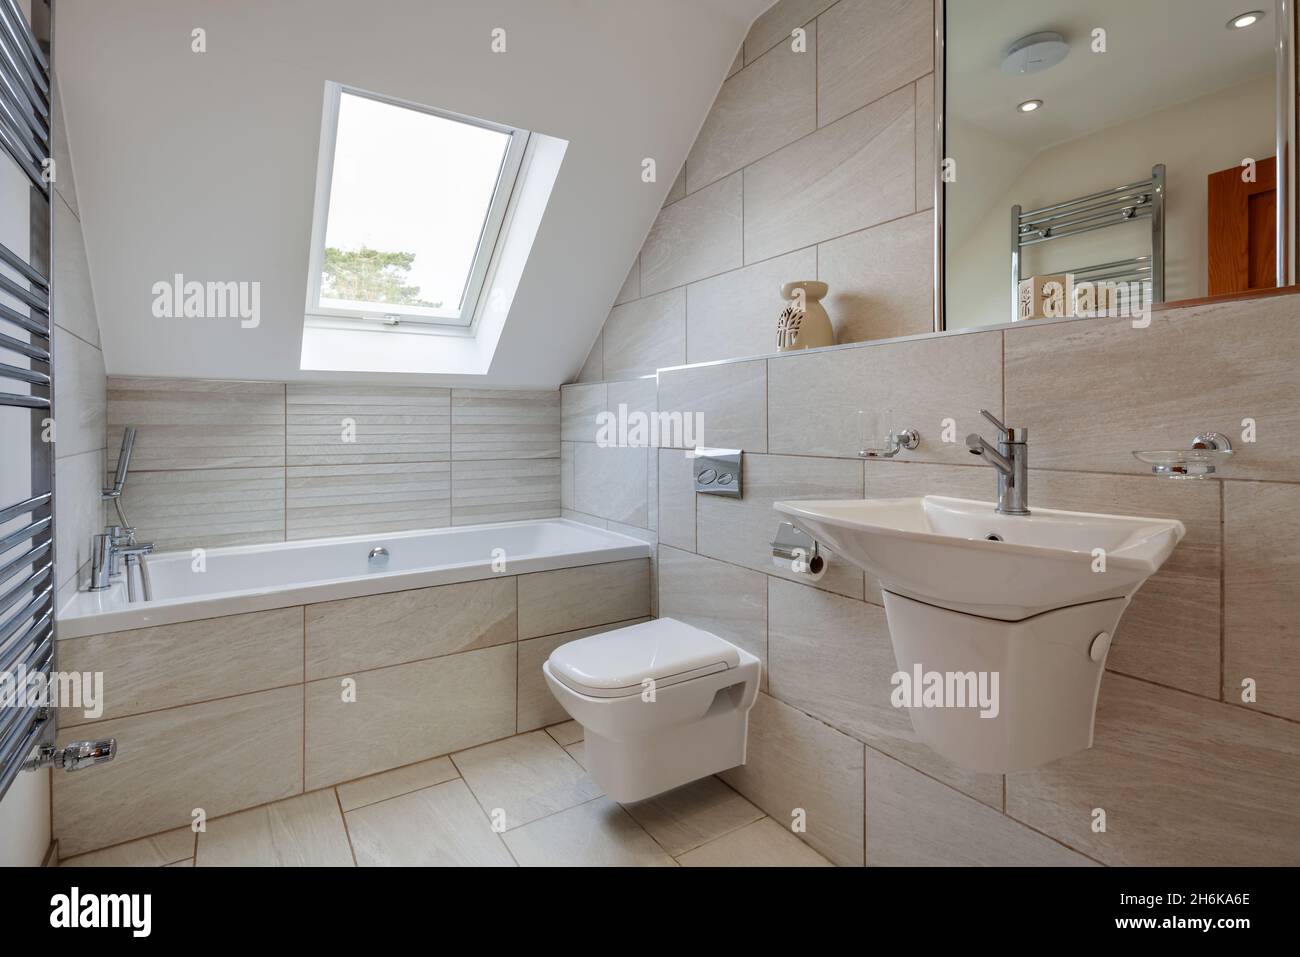 Essex, Angleterre - novembre 18 2019 : WC moderne et moderne avec salle de bains carrelée, lavabo mural en céramique, porte-serviette et miroir. Banque D'Images